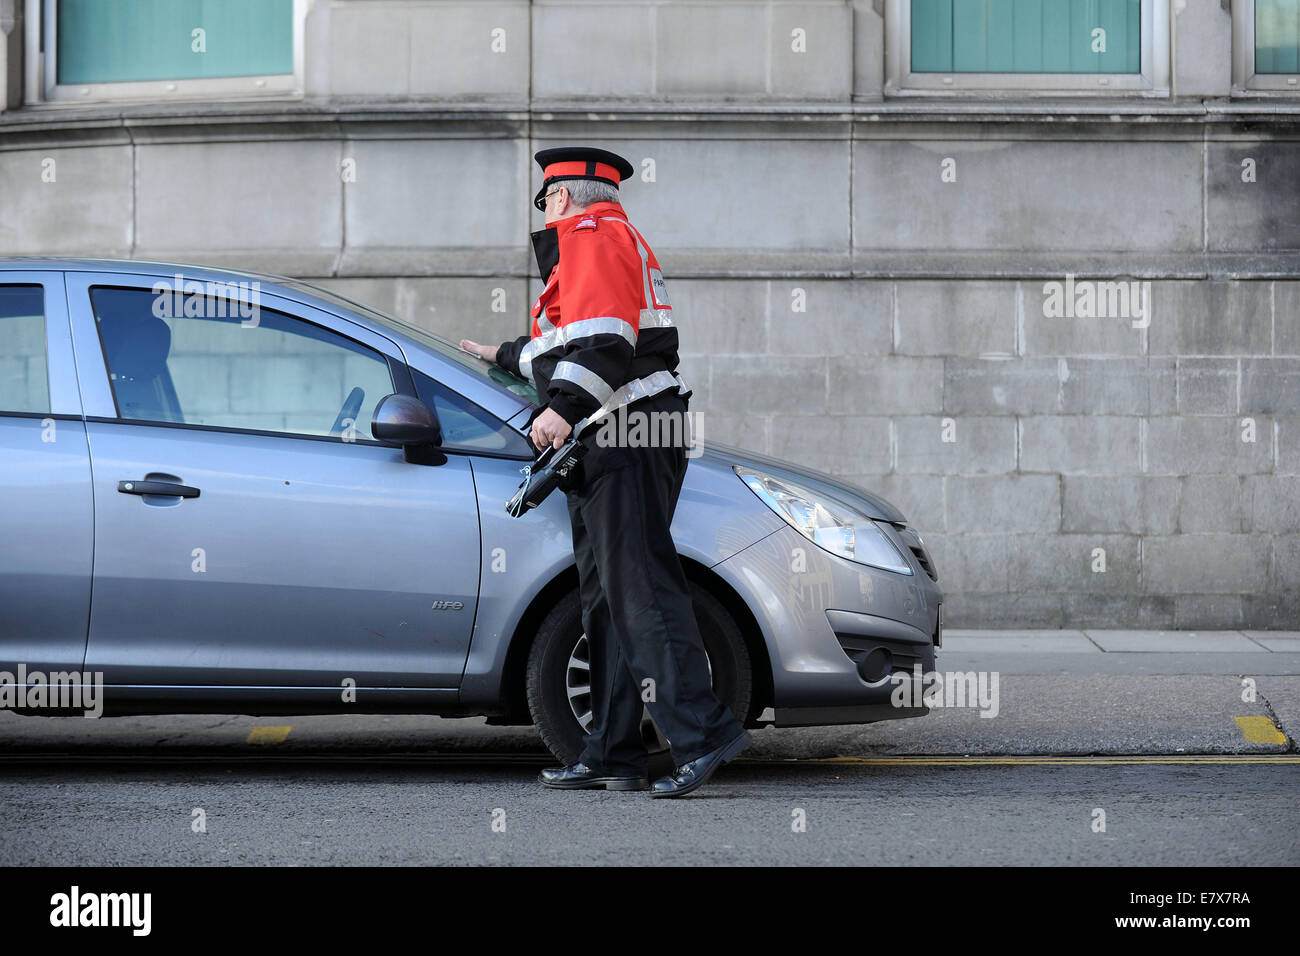 Un gardien de la circulation (agent d'exécution civile) en patrouille l'émission des contraventions de stationnement de voitures stationnées illégalement à Cardiff au Pays de Galles. Banque D'Images